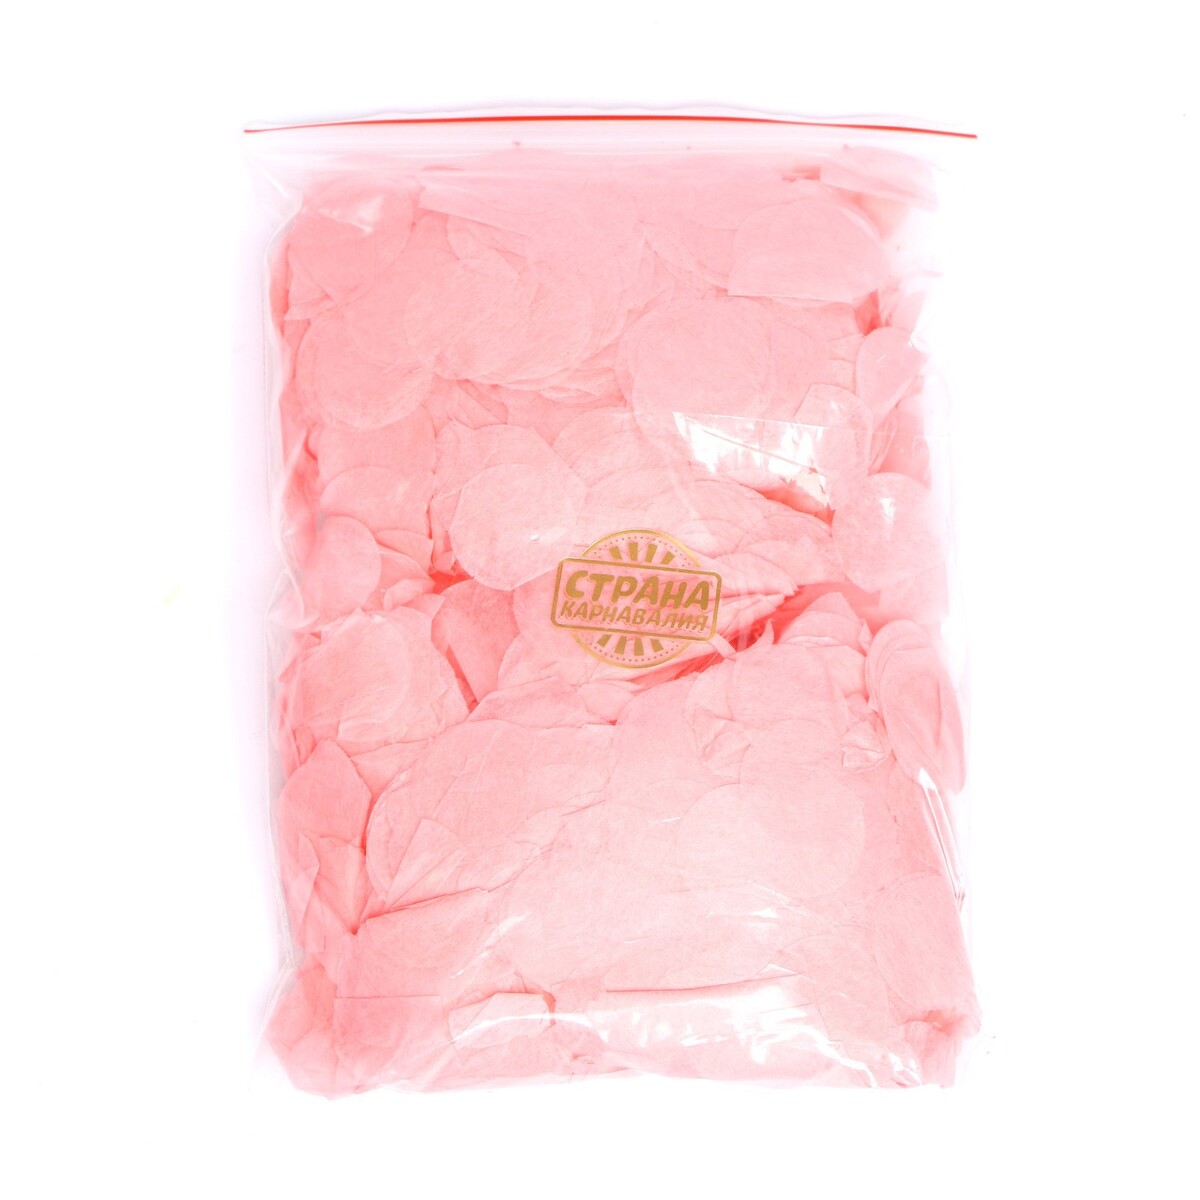 Наполнитель для шара, конфетти розовое, 100 г, 2,5 см наполнитель для шара конфетти а фуксии 5 г 2 5 см по 9 шт на подложке